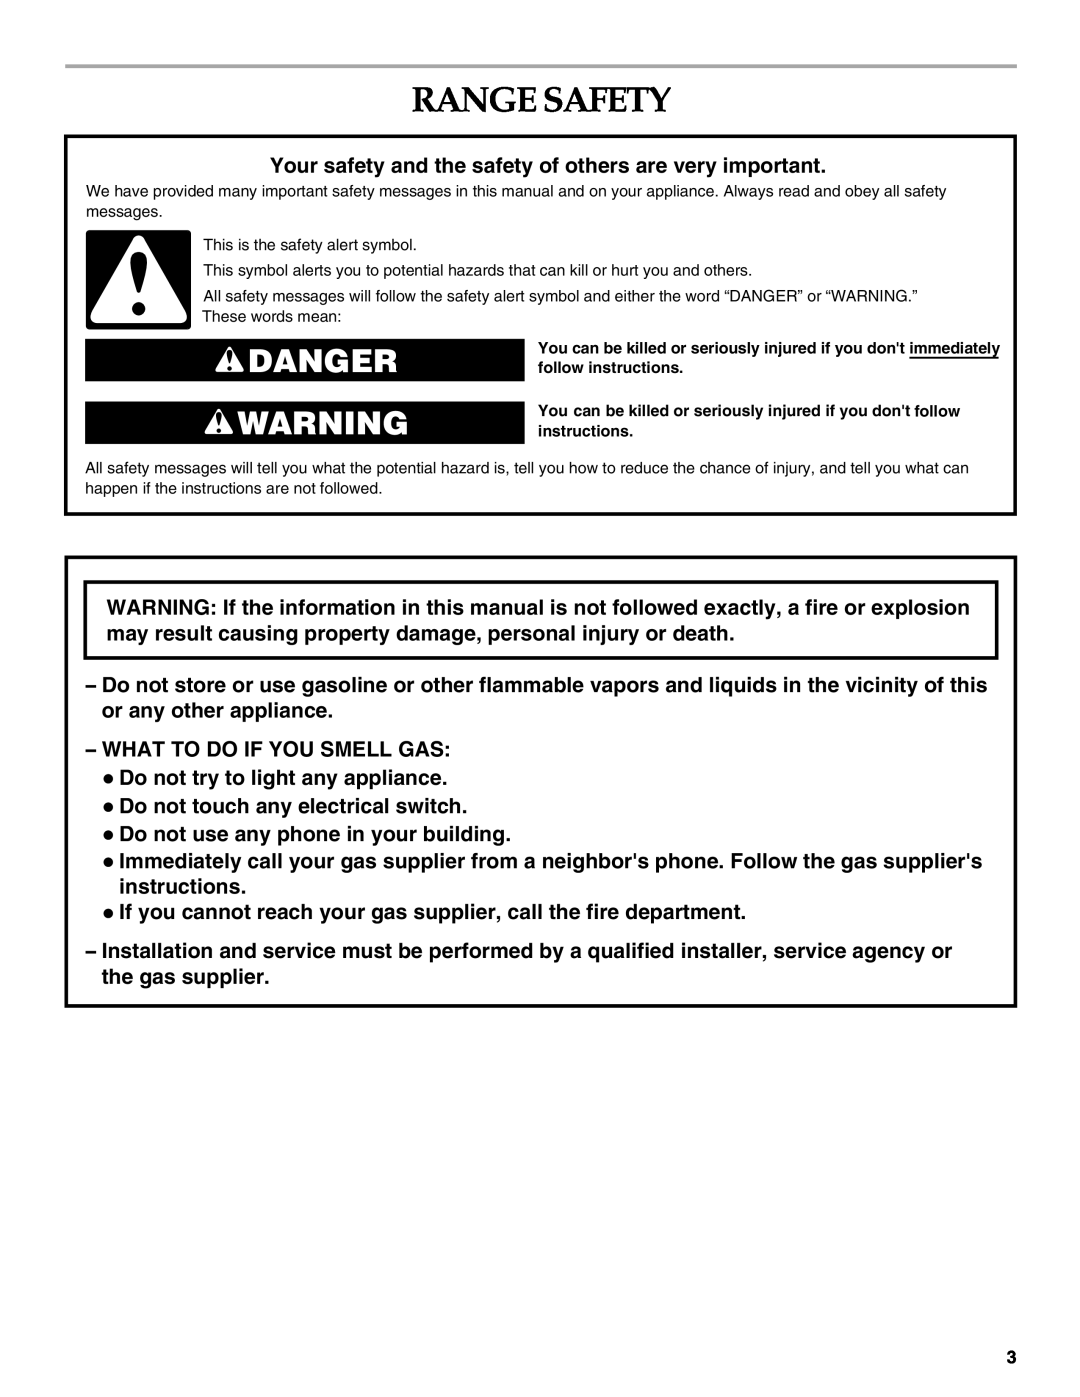 KitchenAid YKDRP767, YKDRP707 manual Range Safety, Danger 